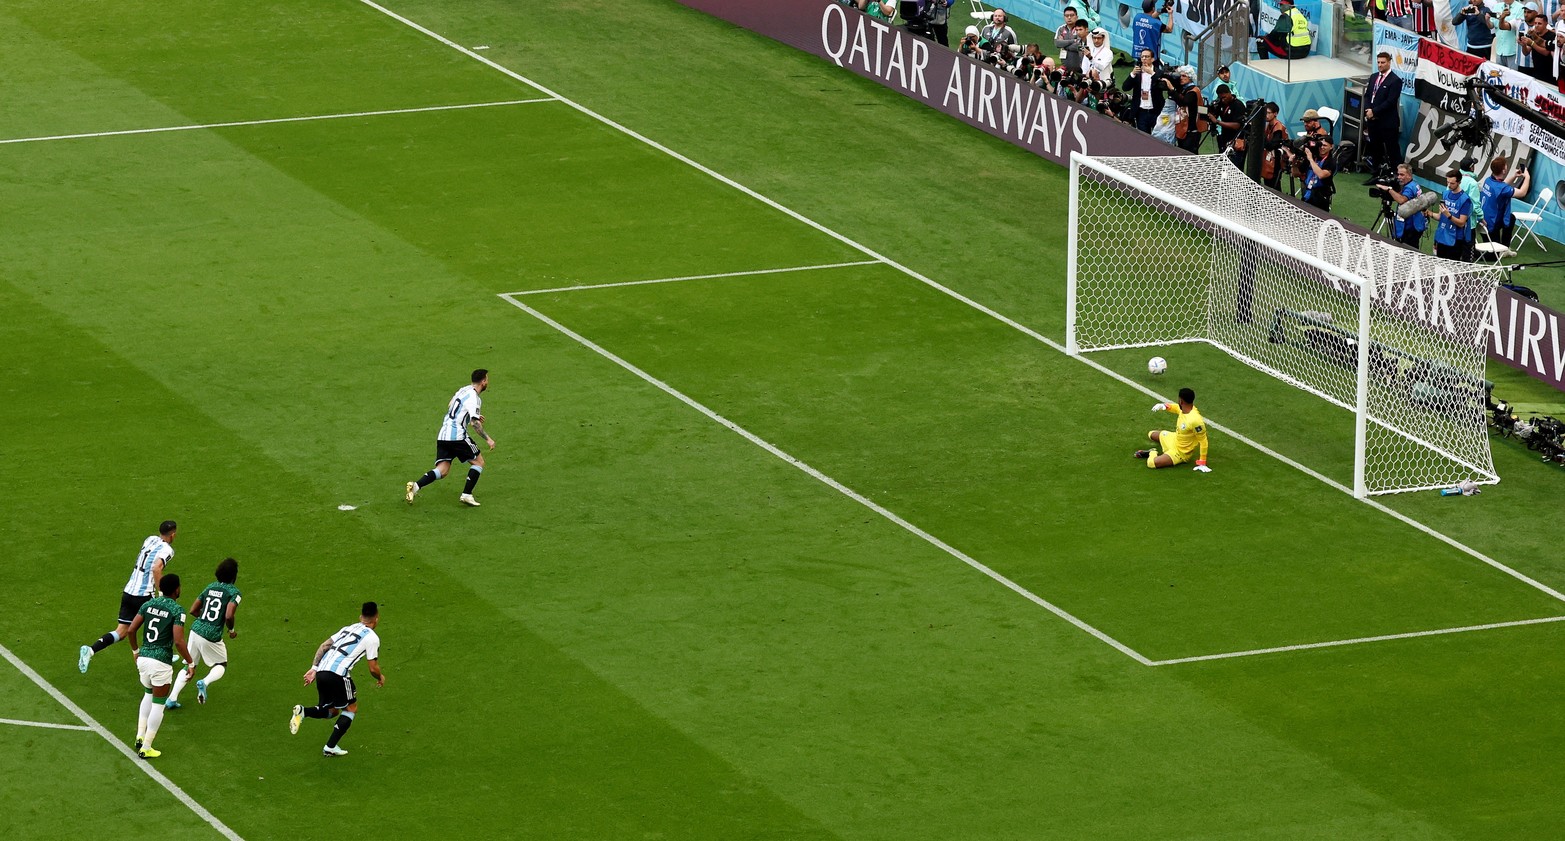 Messi, de penal, abrió el marcador en el debut celeste y blanco. Crédito: Reuters.